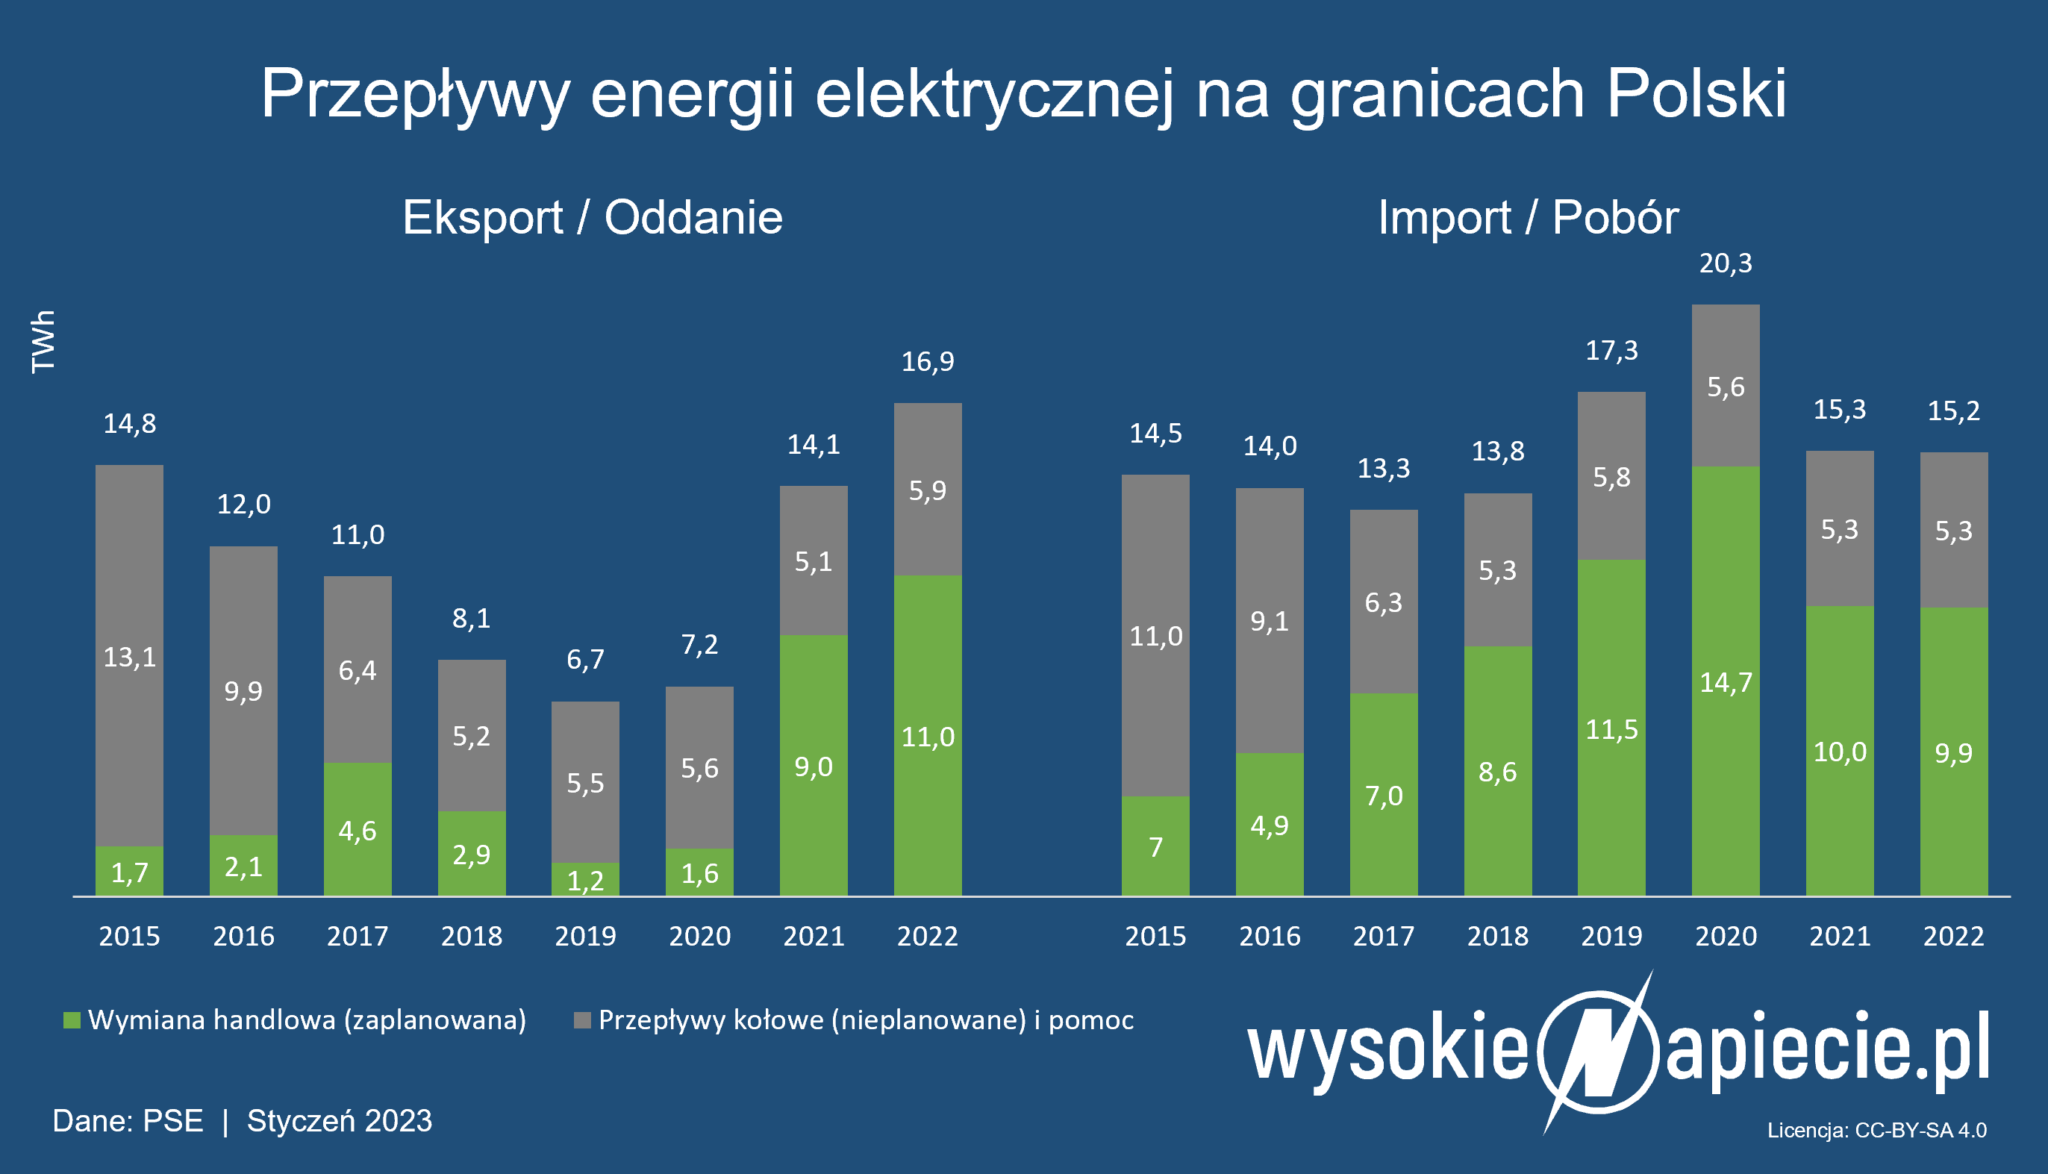 Rekordowa Produkcja Energii Elektrycznej W Polsce W 2022 Wysokienapieciepl 2314